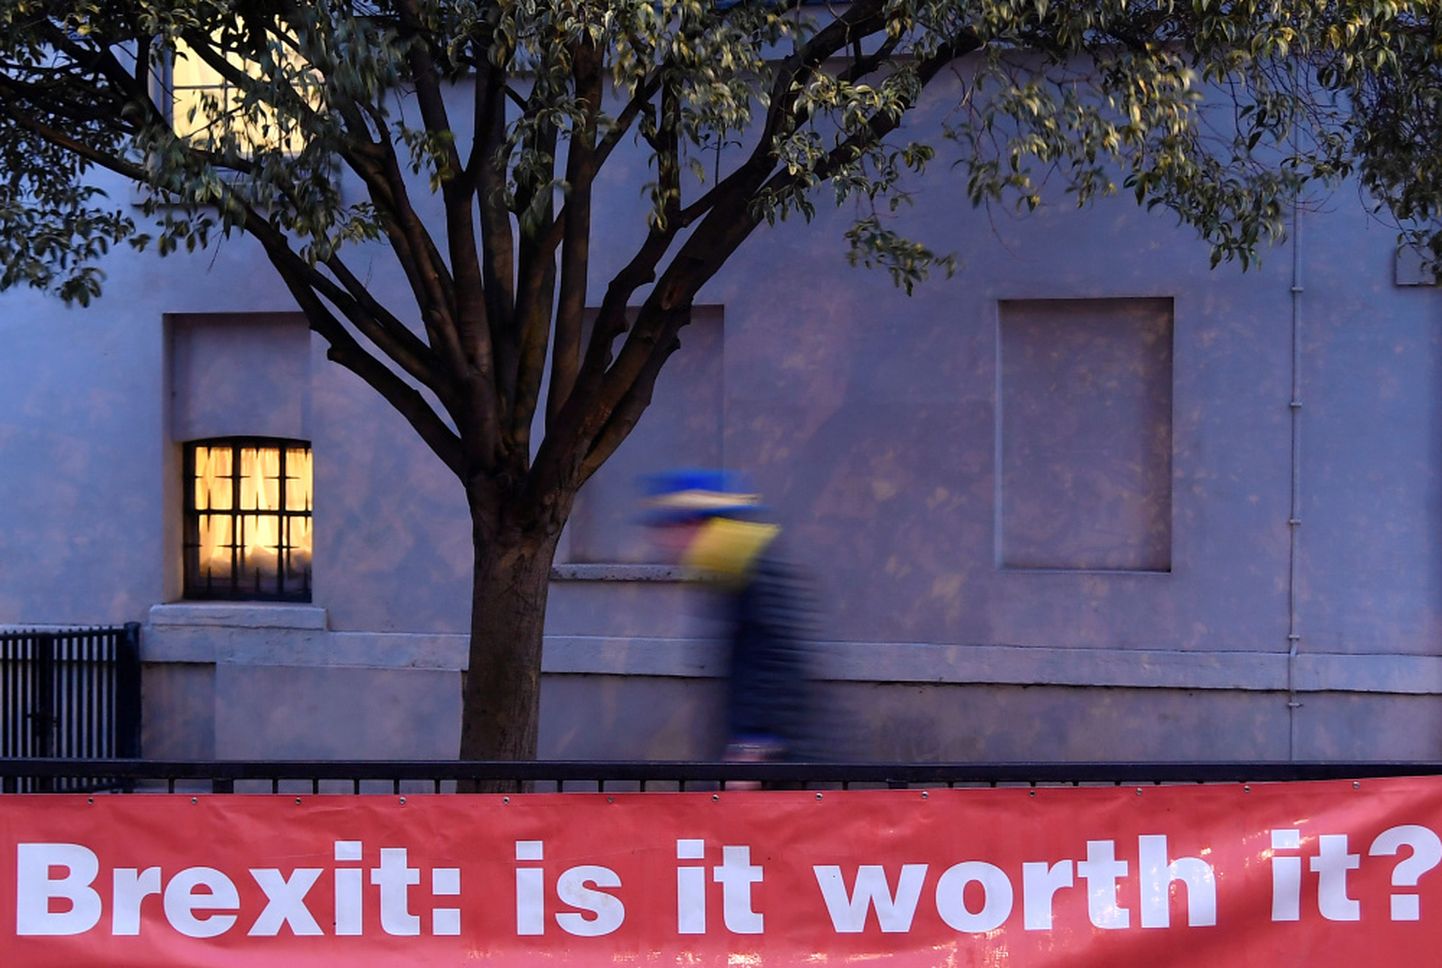 Uzraksts plakātā: "Brexit: Vai tas ir tā vērts?"